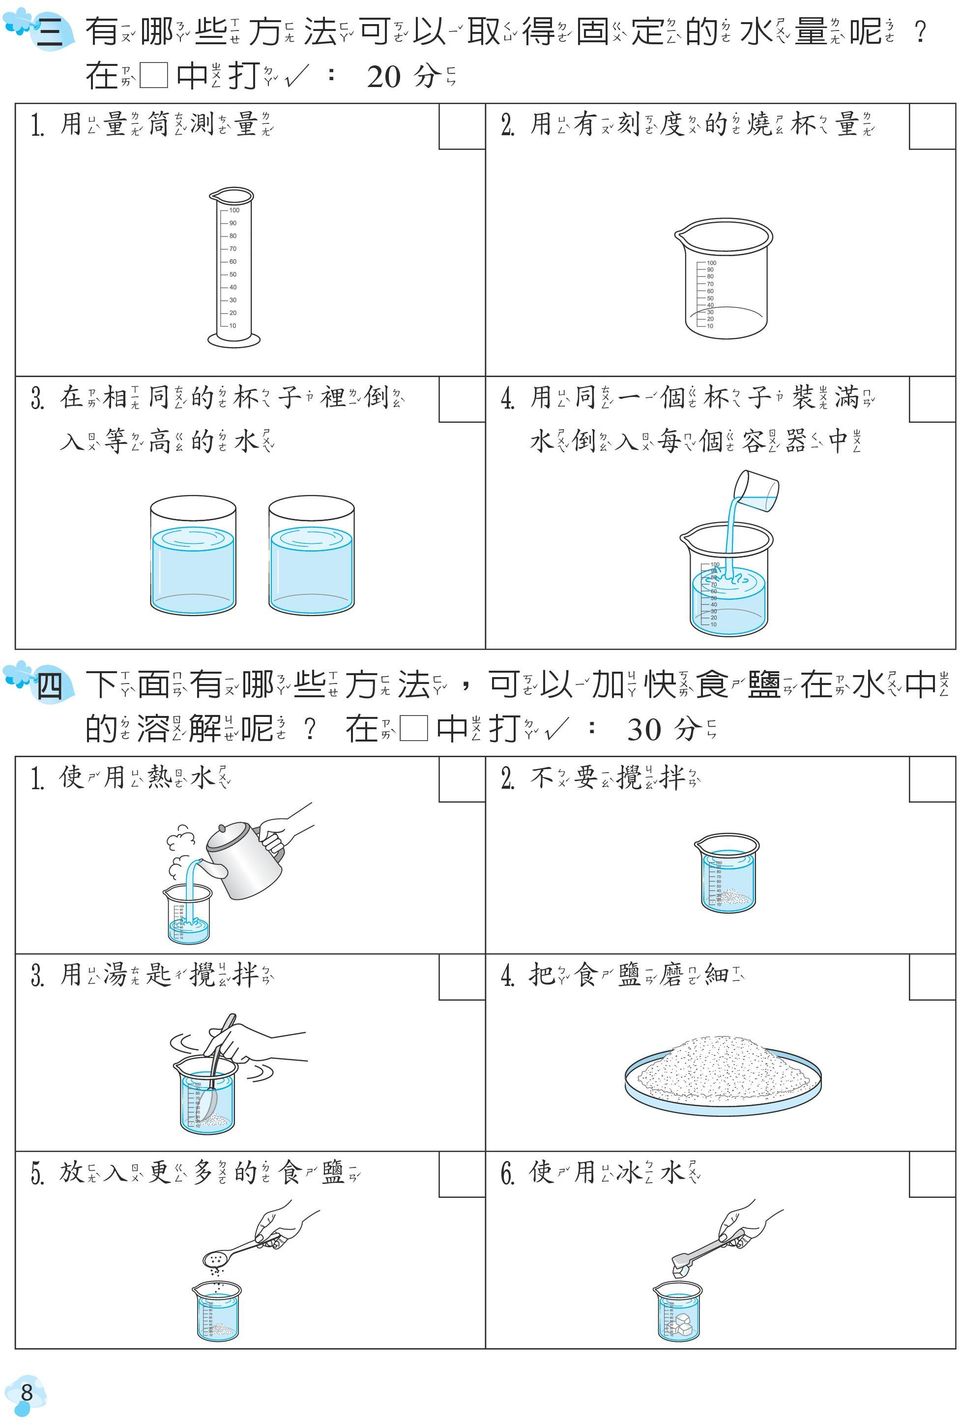 高 的 水 4 用 同 一 個 杯 子 裝 滿 水 倒 入 每 個 容 器 中 四 下 面 有 哪 些 方 法, 可 以 加 快